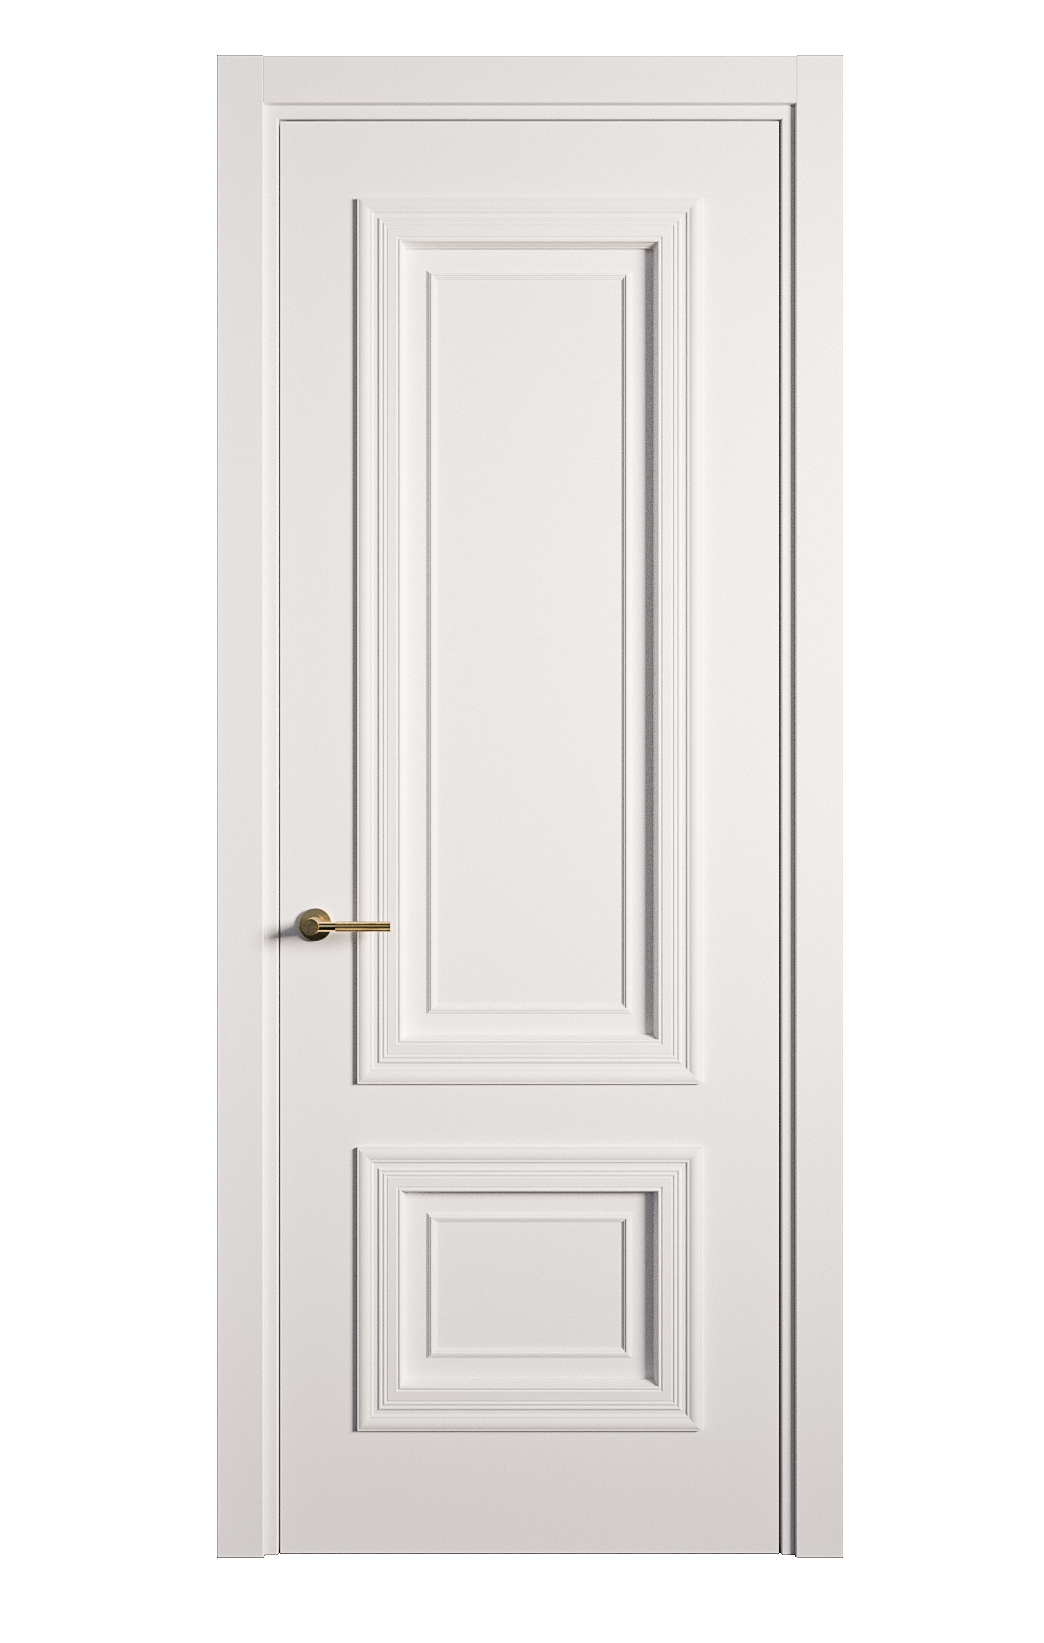 Межкомнатная дверь Мальта-1 глухая эмаль ral 9003 26979